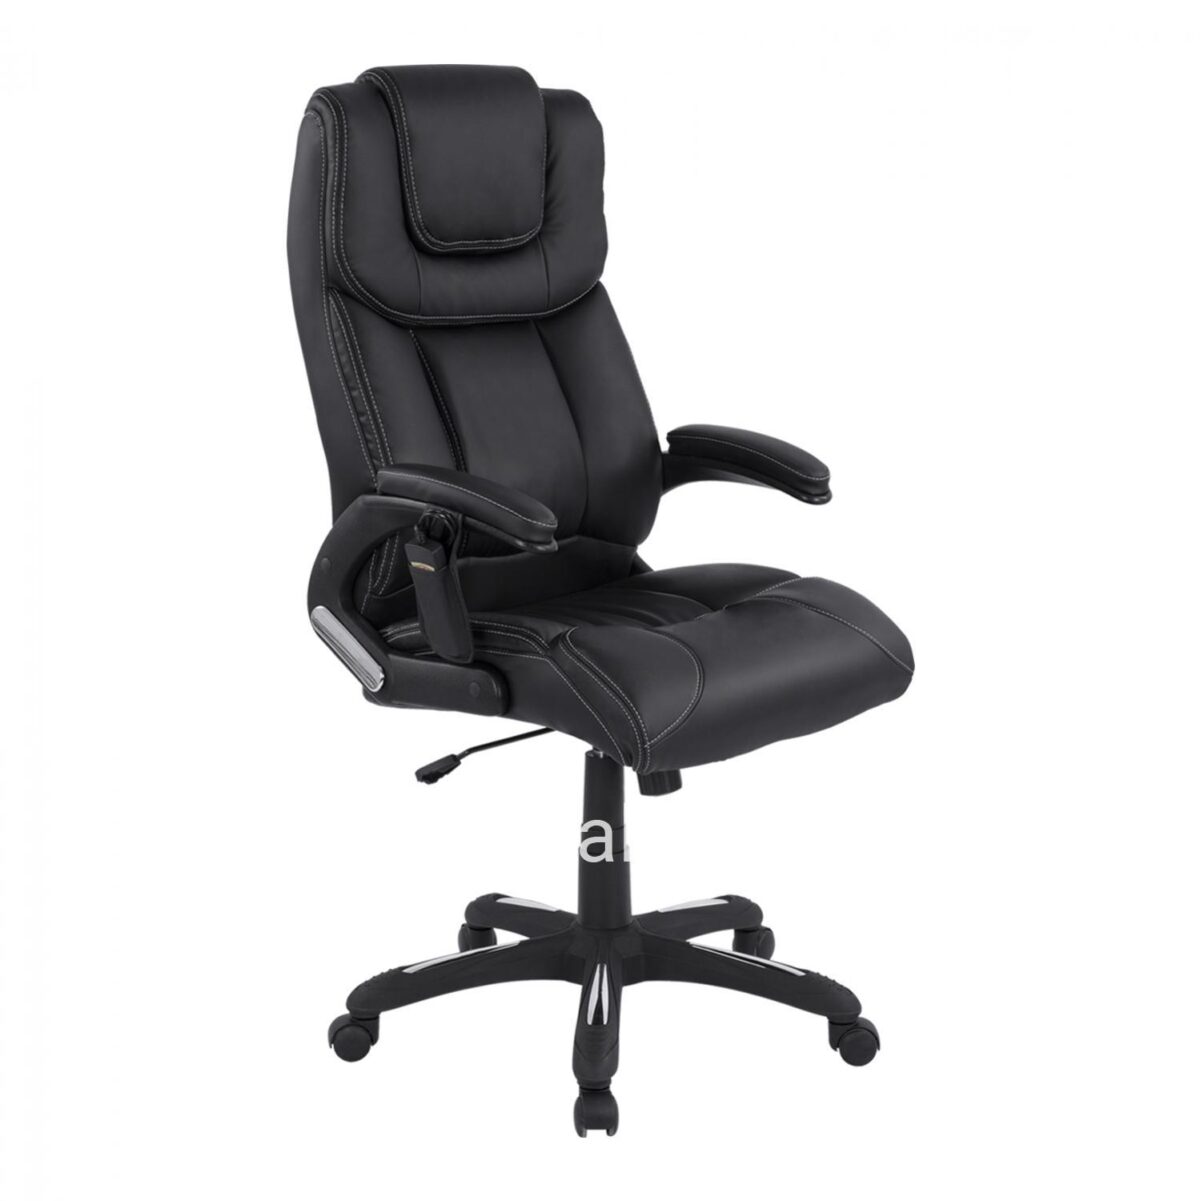 Massage Office chair HM1050.01 black color